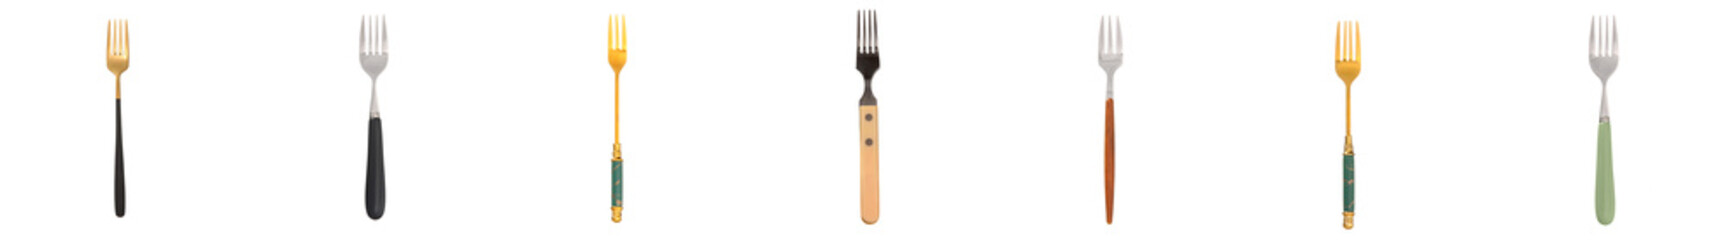 Set of stylish forks on white background